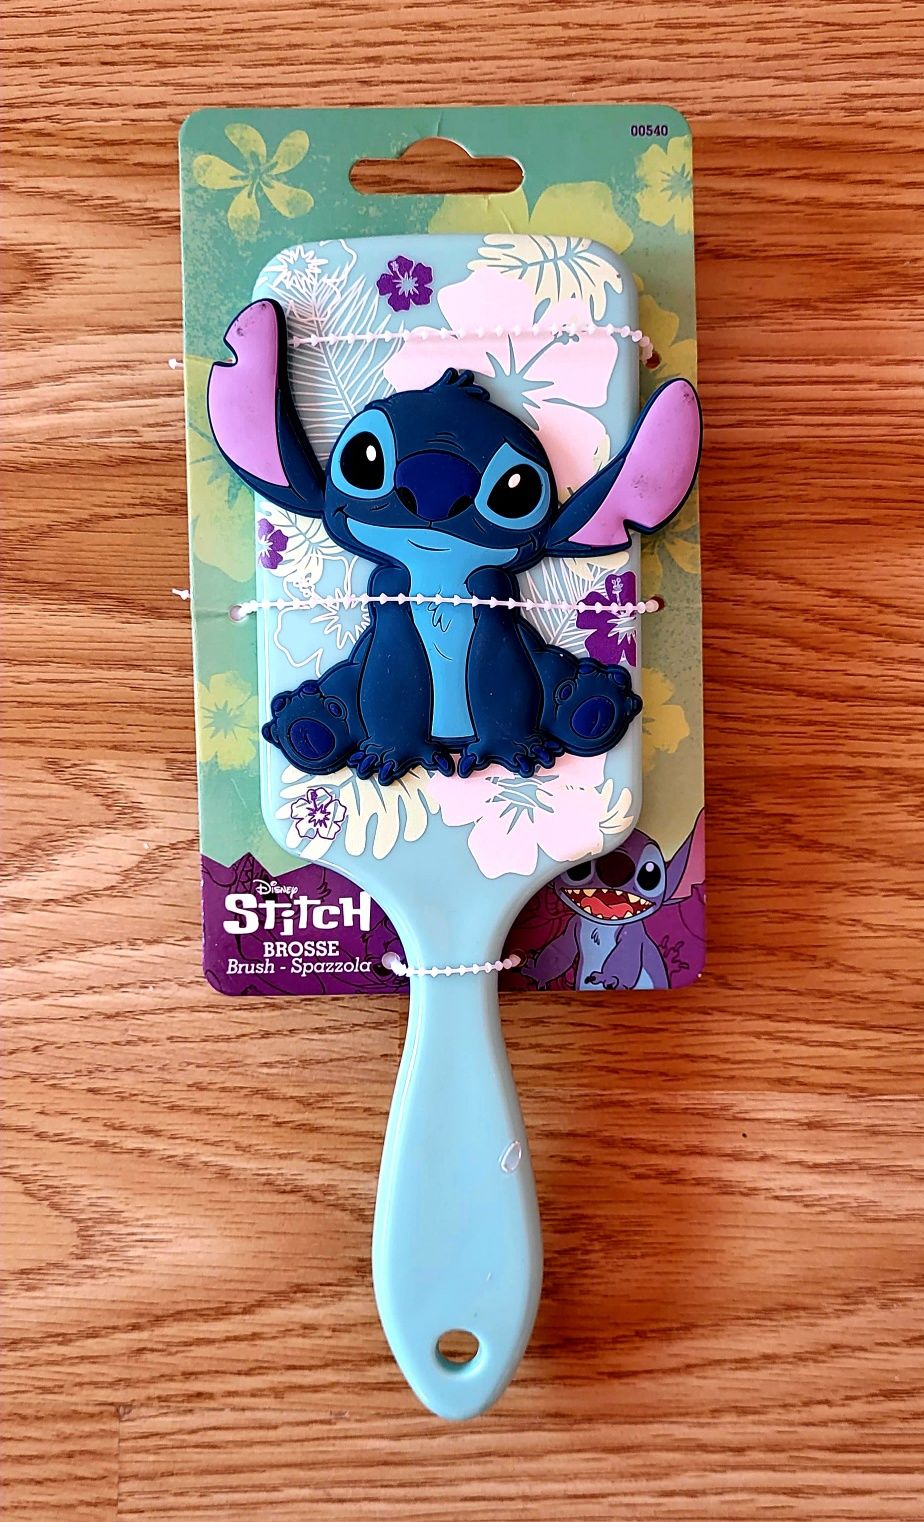 Disney Store Księżniczki szczotka Ariel Roszpunka Jasmina Stitch